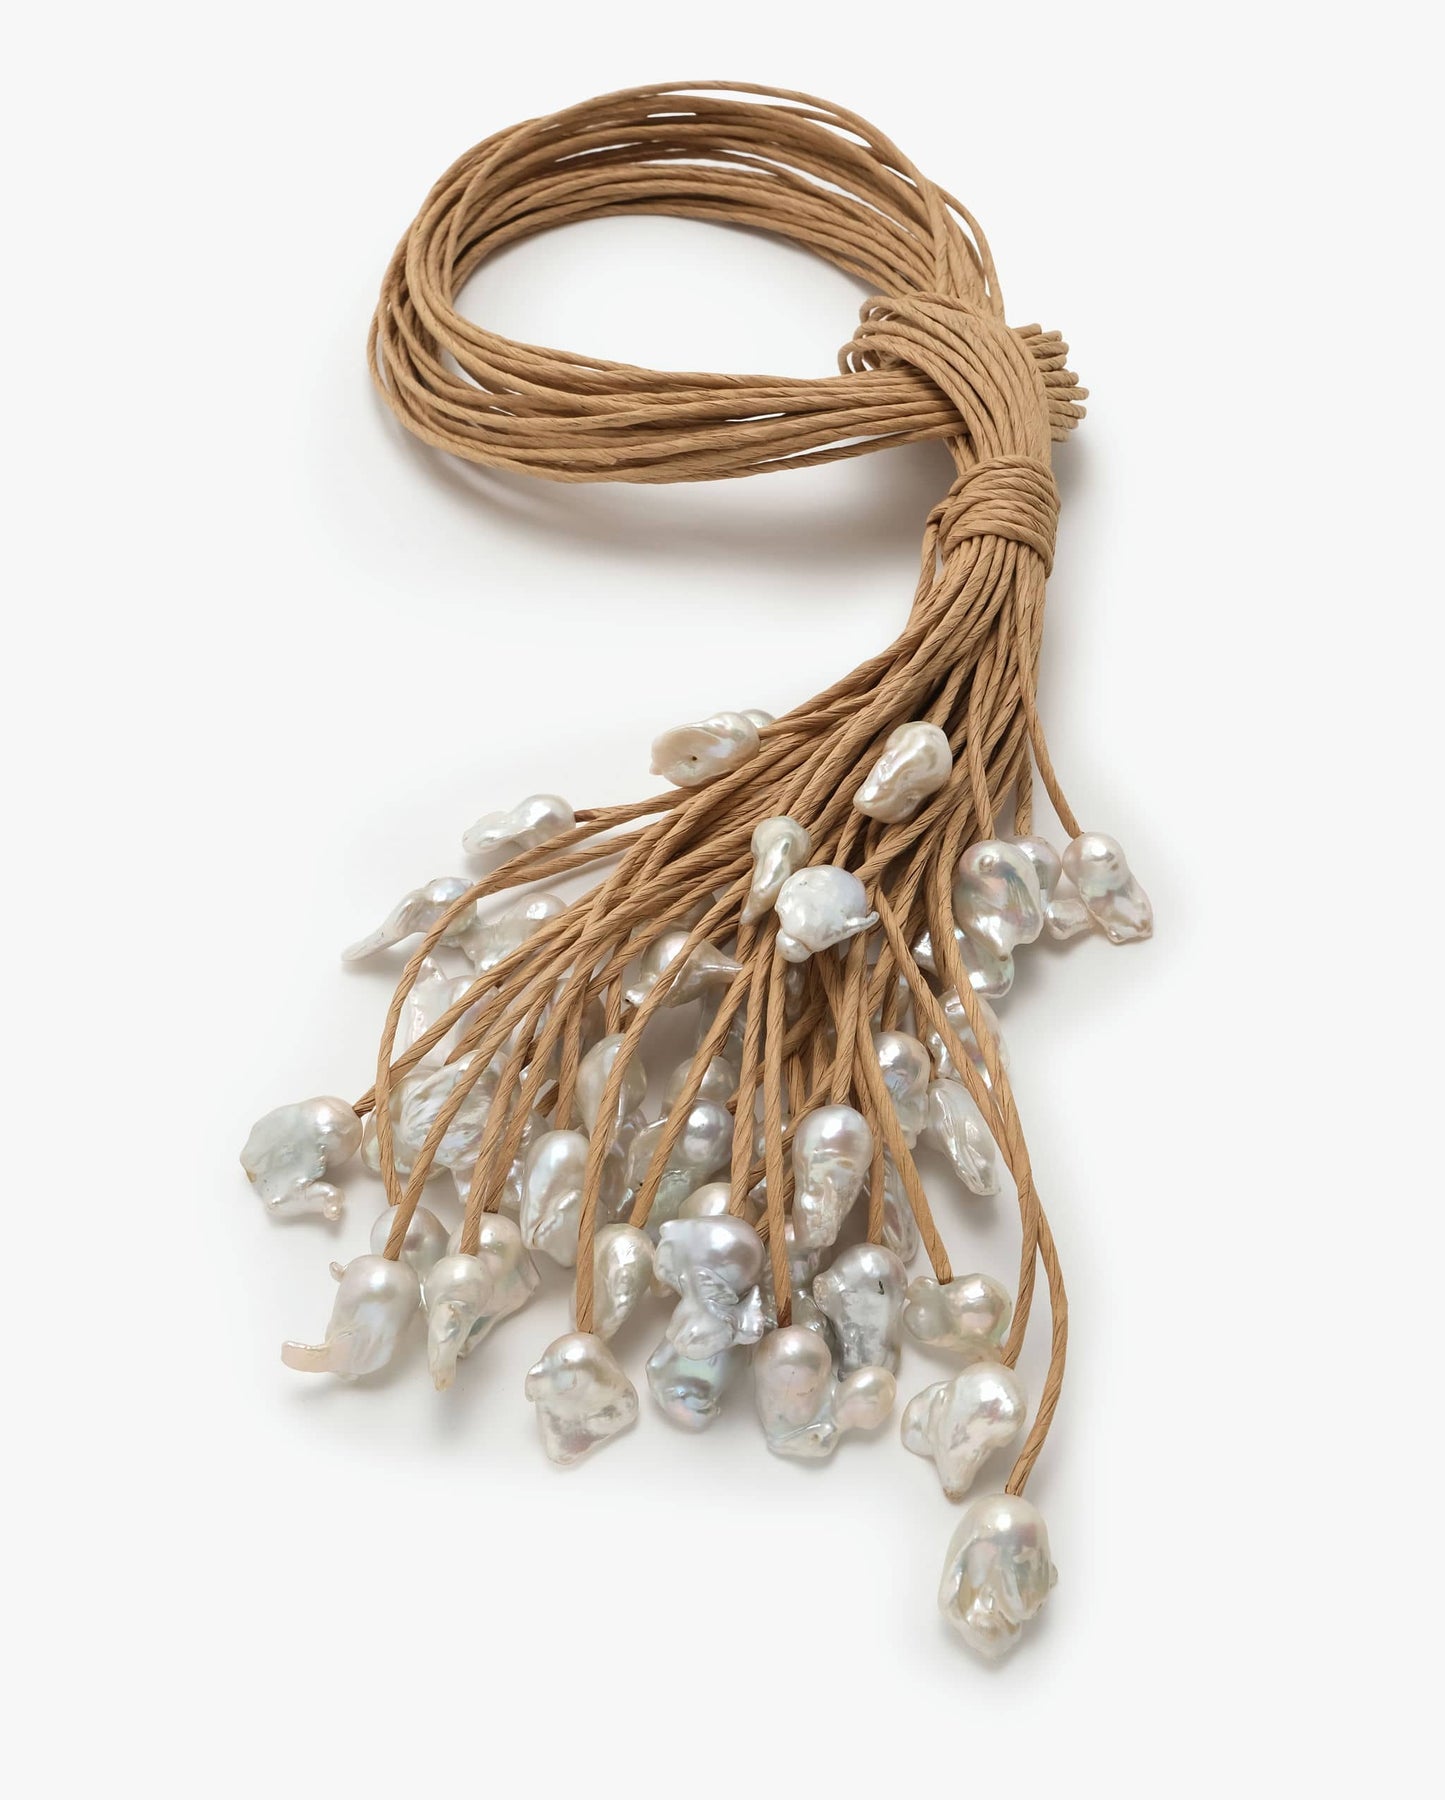 Showpiece: bast cord, baroque pearls